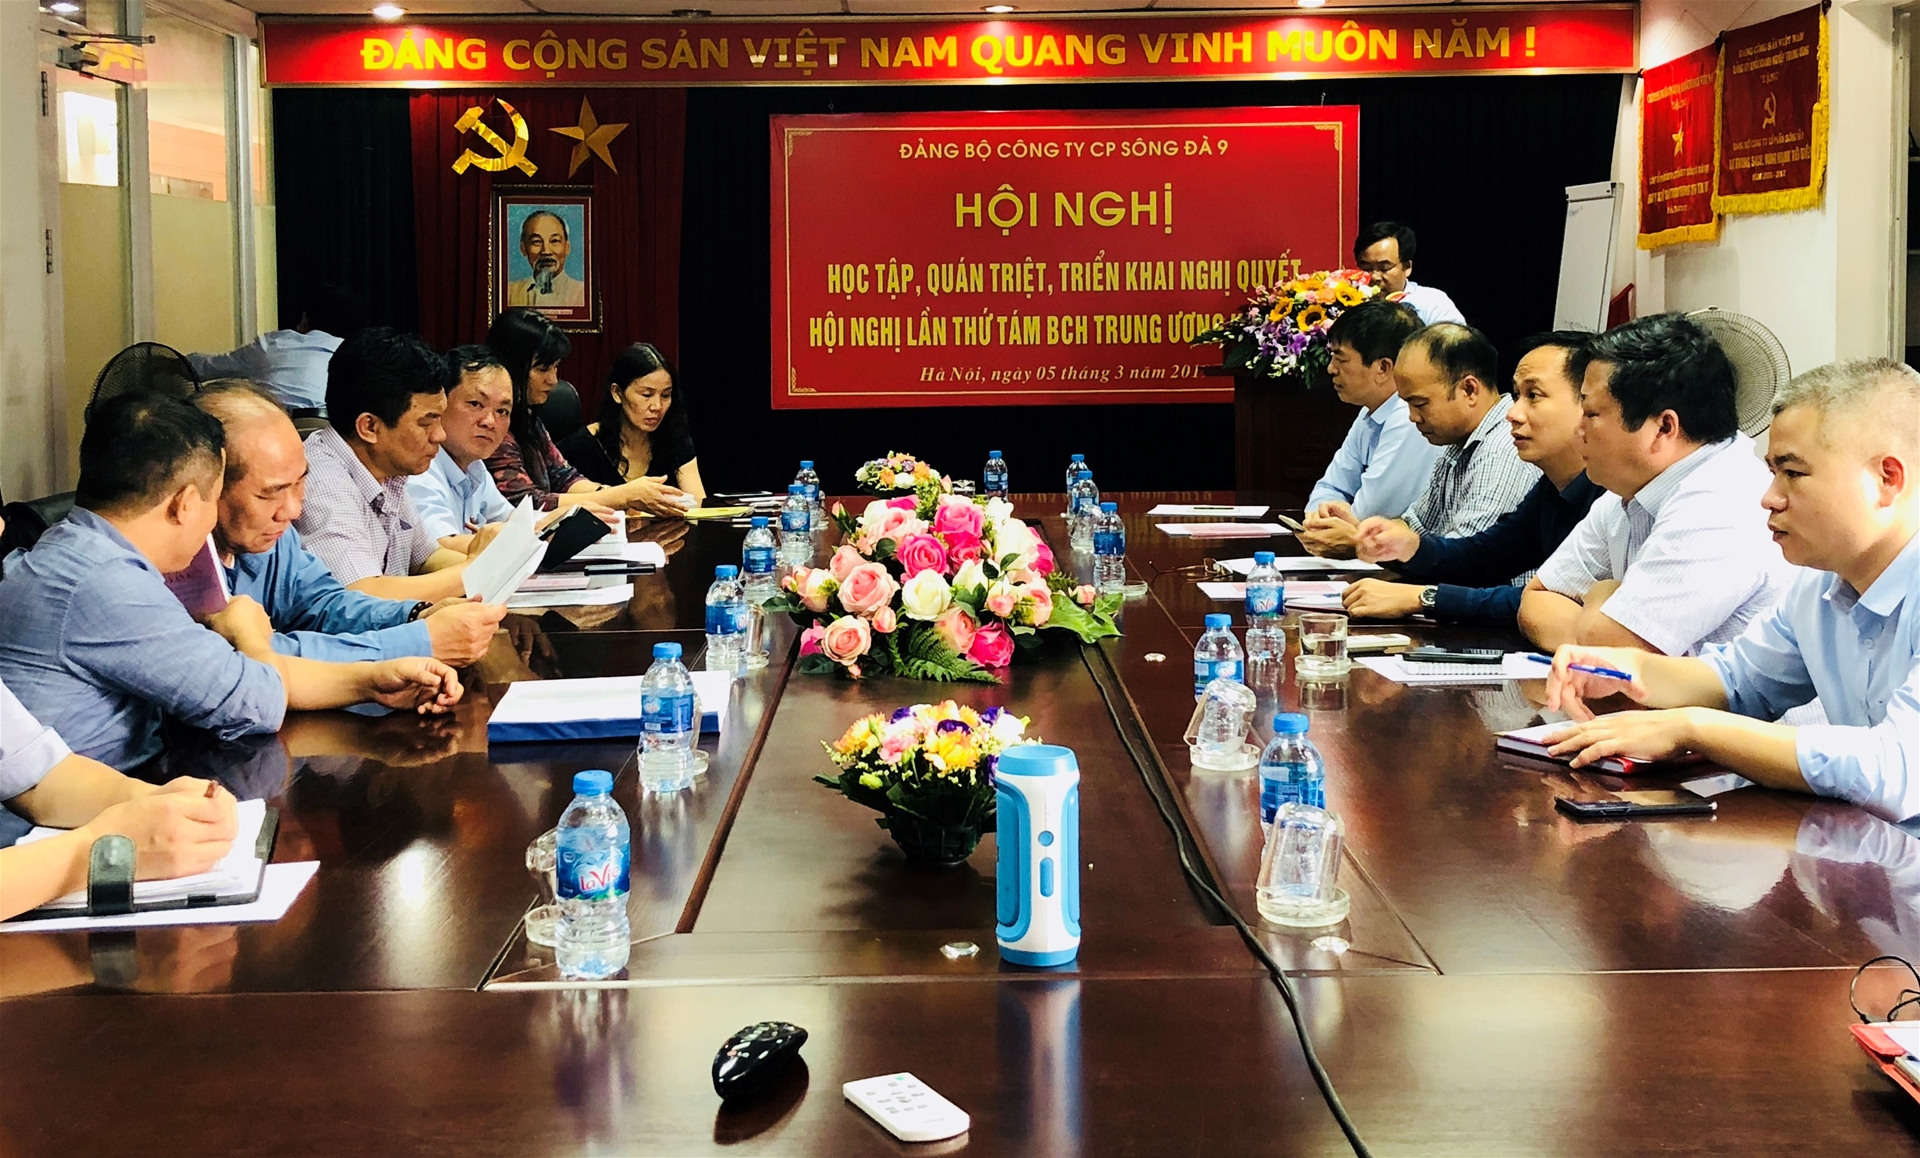 Hội nghị học tập, quán triệt, triển khai thực hiện các Nghị quyết của Hội nghị lần thứ Tám BCH Trung ương Đảng (khóa XII) của Đảng bộ Công ty cổ phần Sông Đà 9